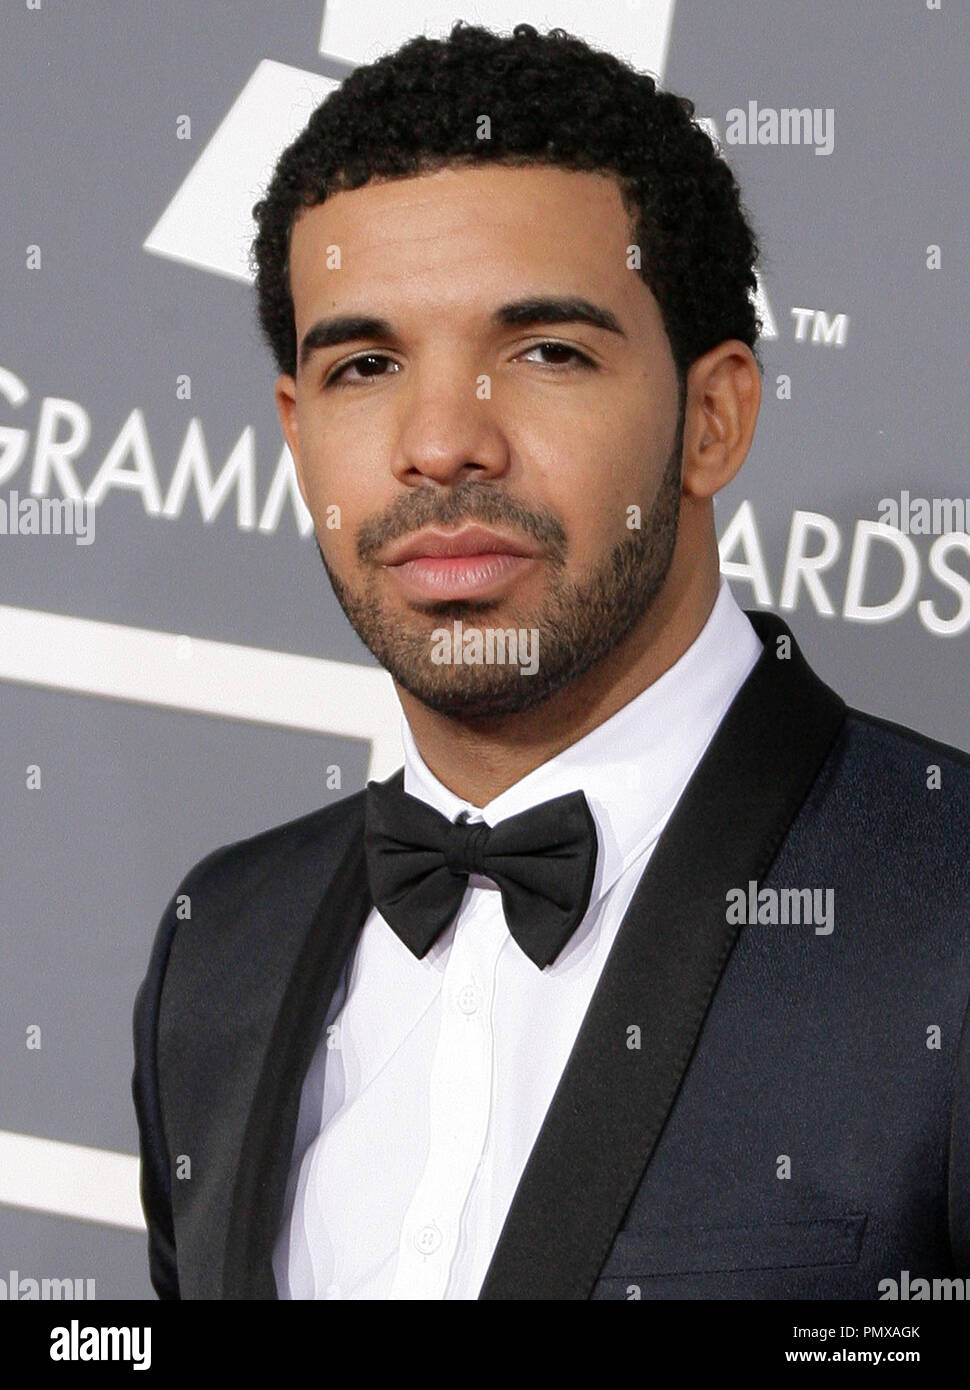 Drake auf der 55. jährlichen Grammy Awards im Staples Center in Los Angeles, CA. Die Veranstaltung fand am Sonntag, 10. Februar 2013. Foto von PRPP/PictureLux Datei Referenz # 31836 052 PRPP nur für redaktionelle Verwendung - Alle Rechte vorbehalten Stockfoto